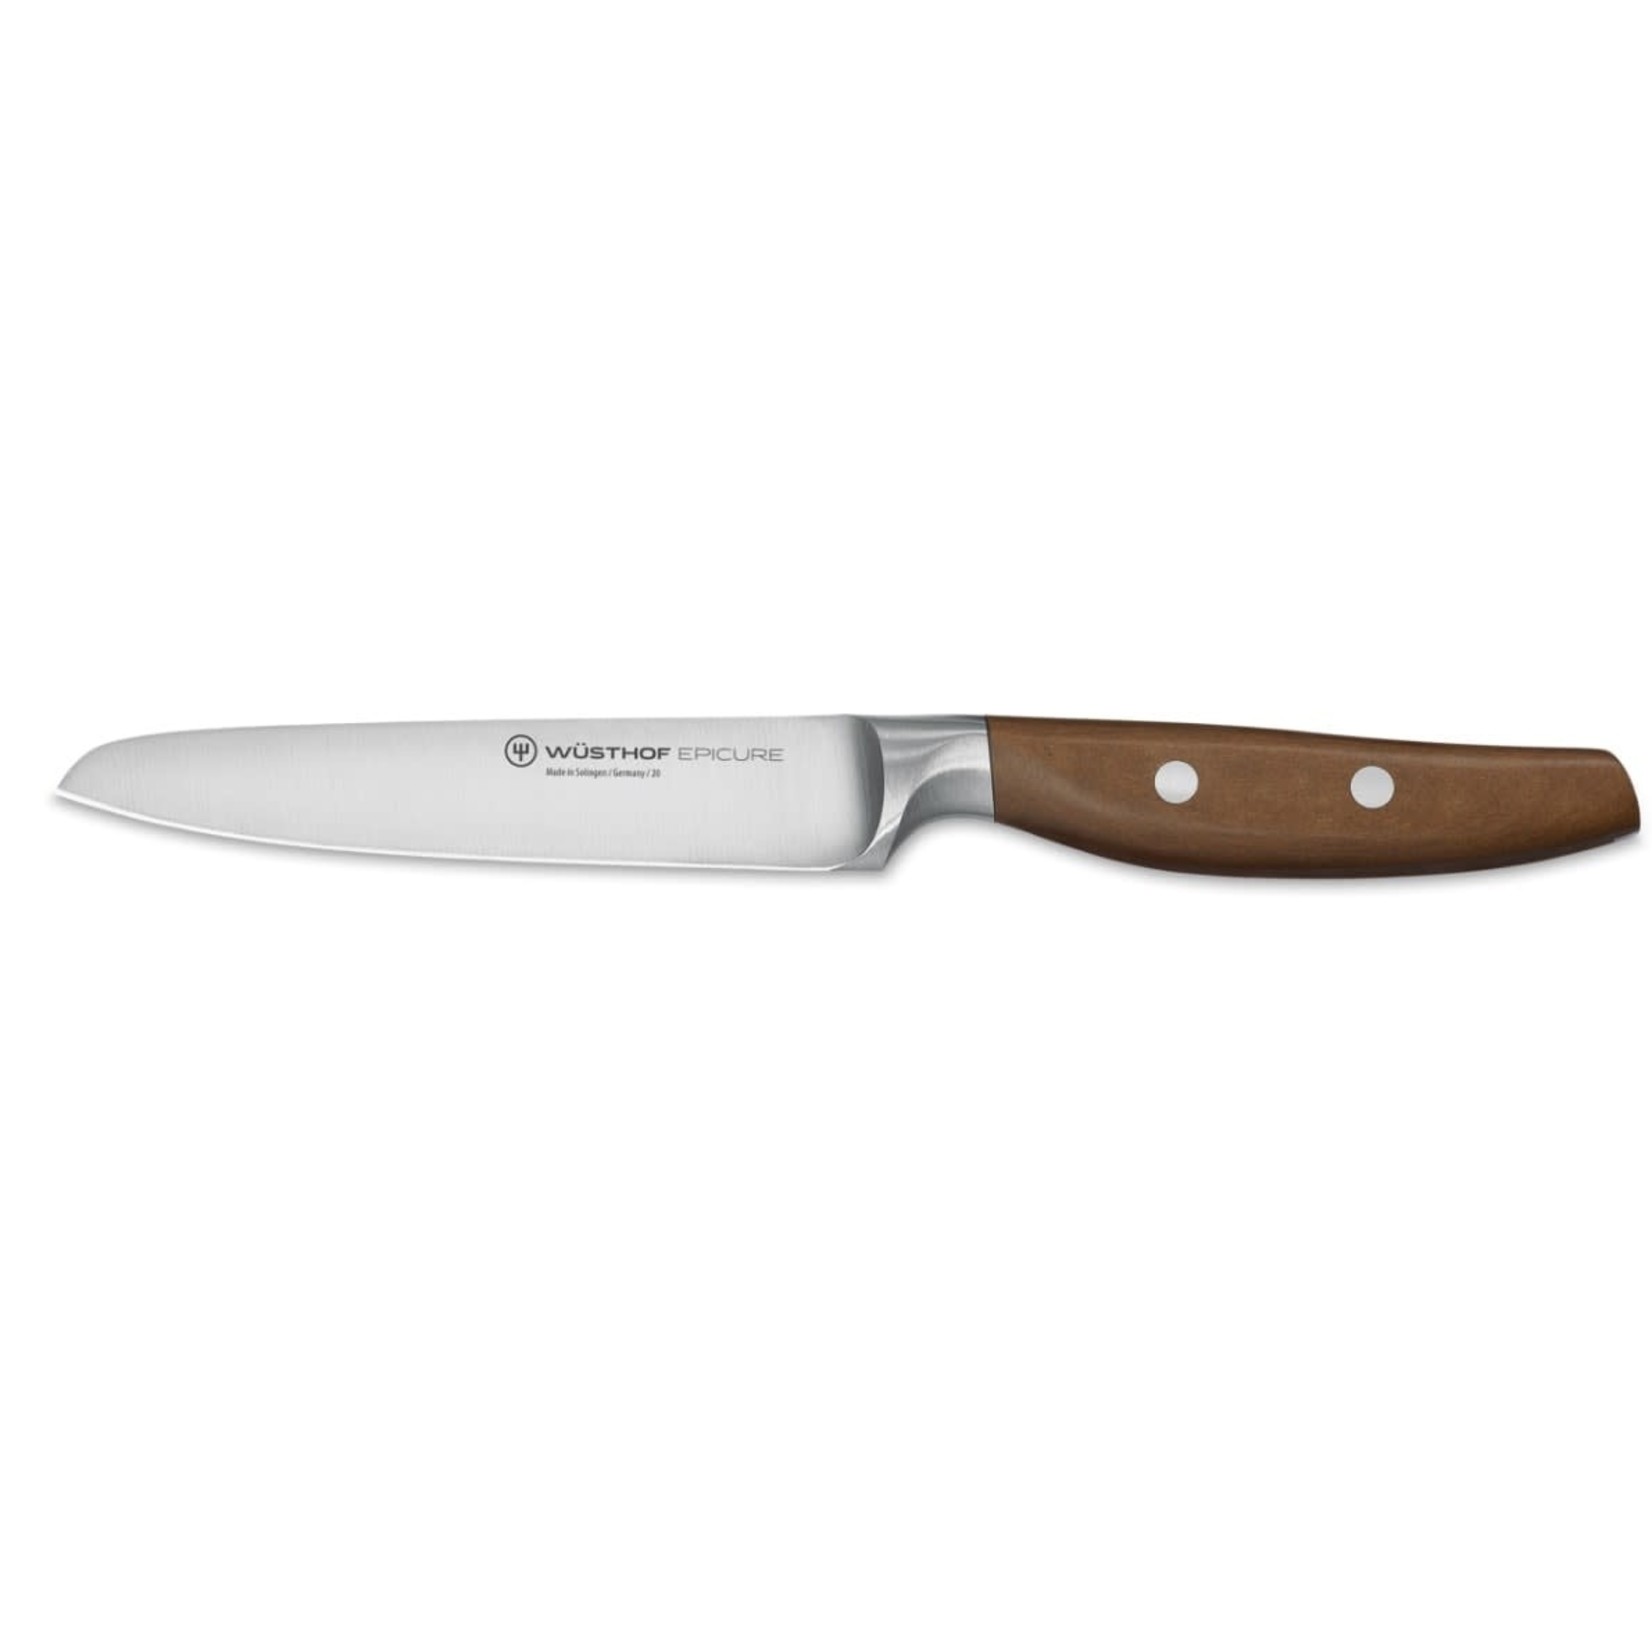 WUSTHOF WUSTHOF Epicure Utility Knife 4.5" REG $205.00